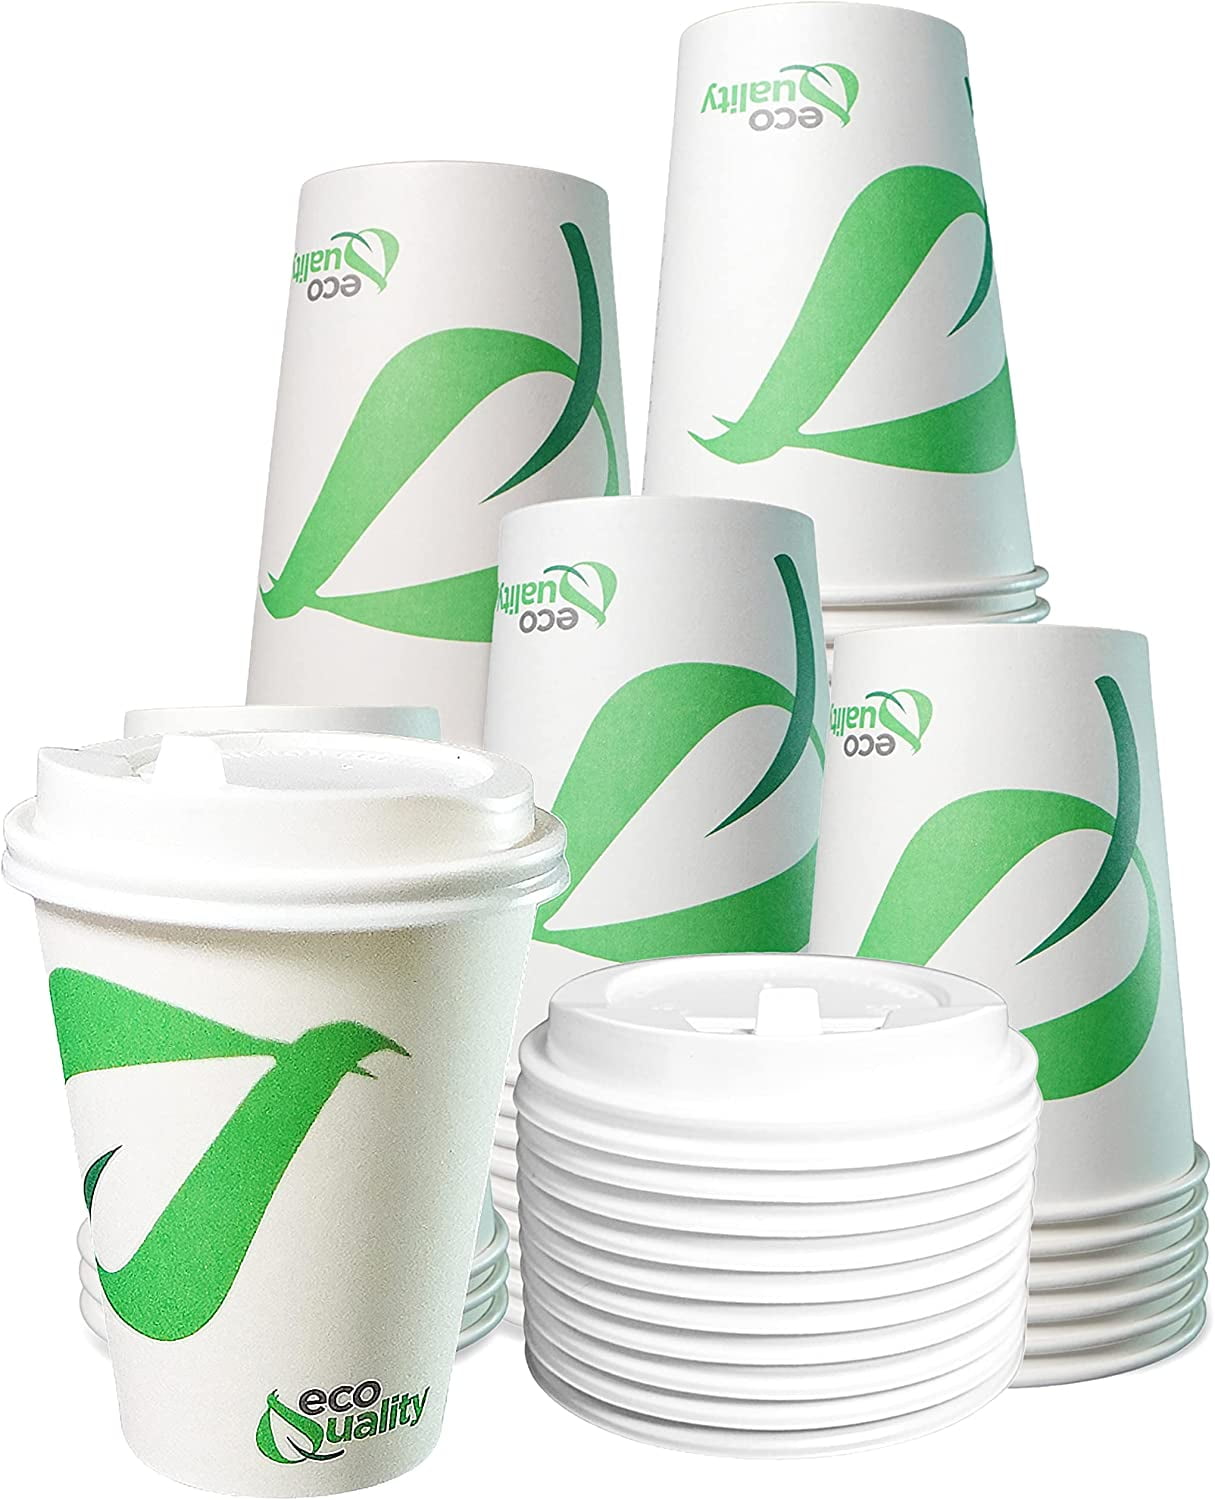 Vasos para café blancos ECO plastic free